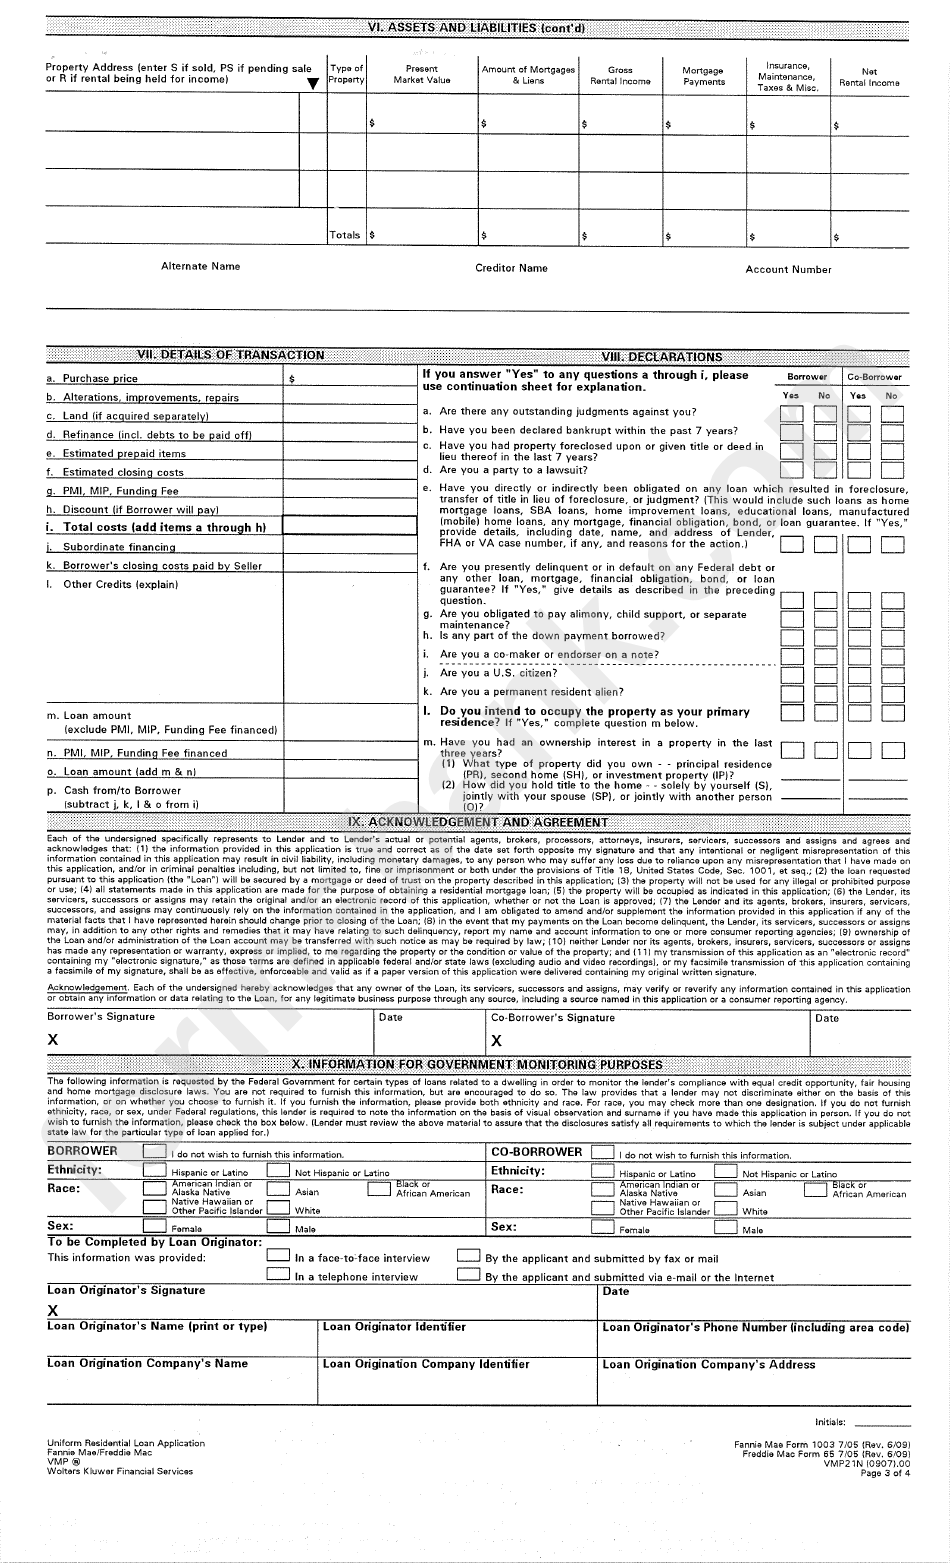 Fannie Mae Form 1003 7/05 - Uniform Residential Loan Application